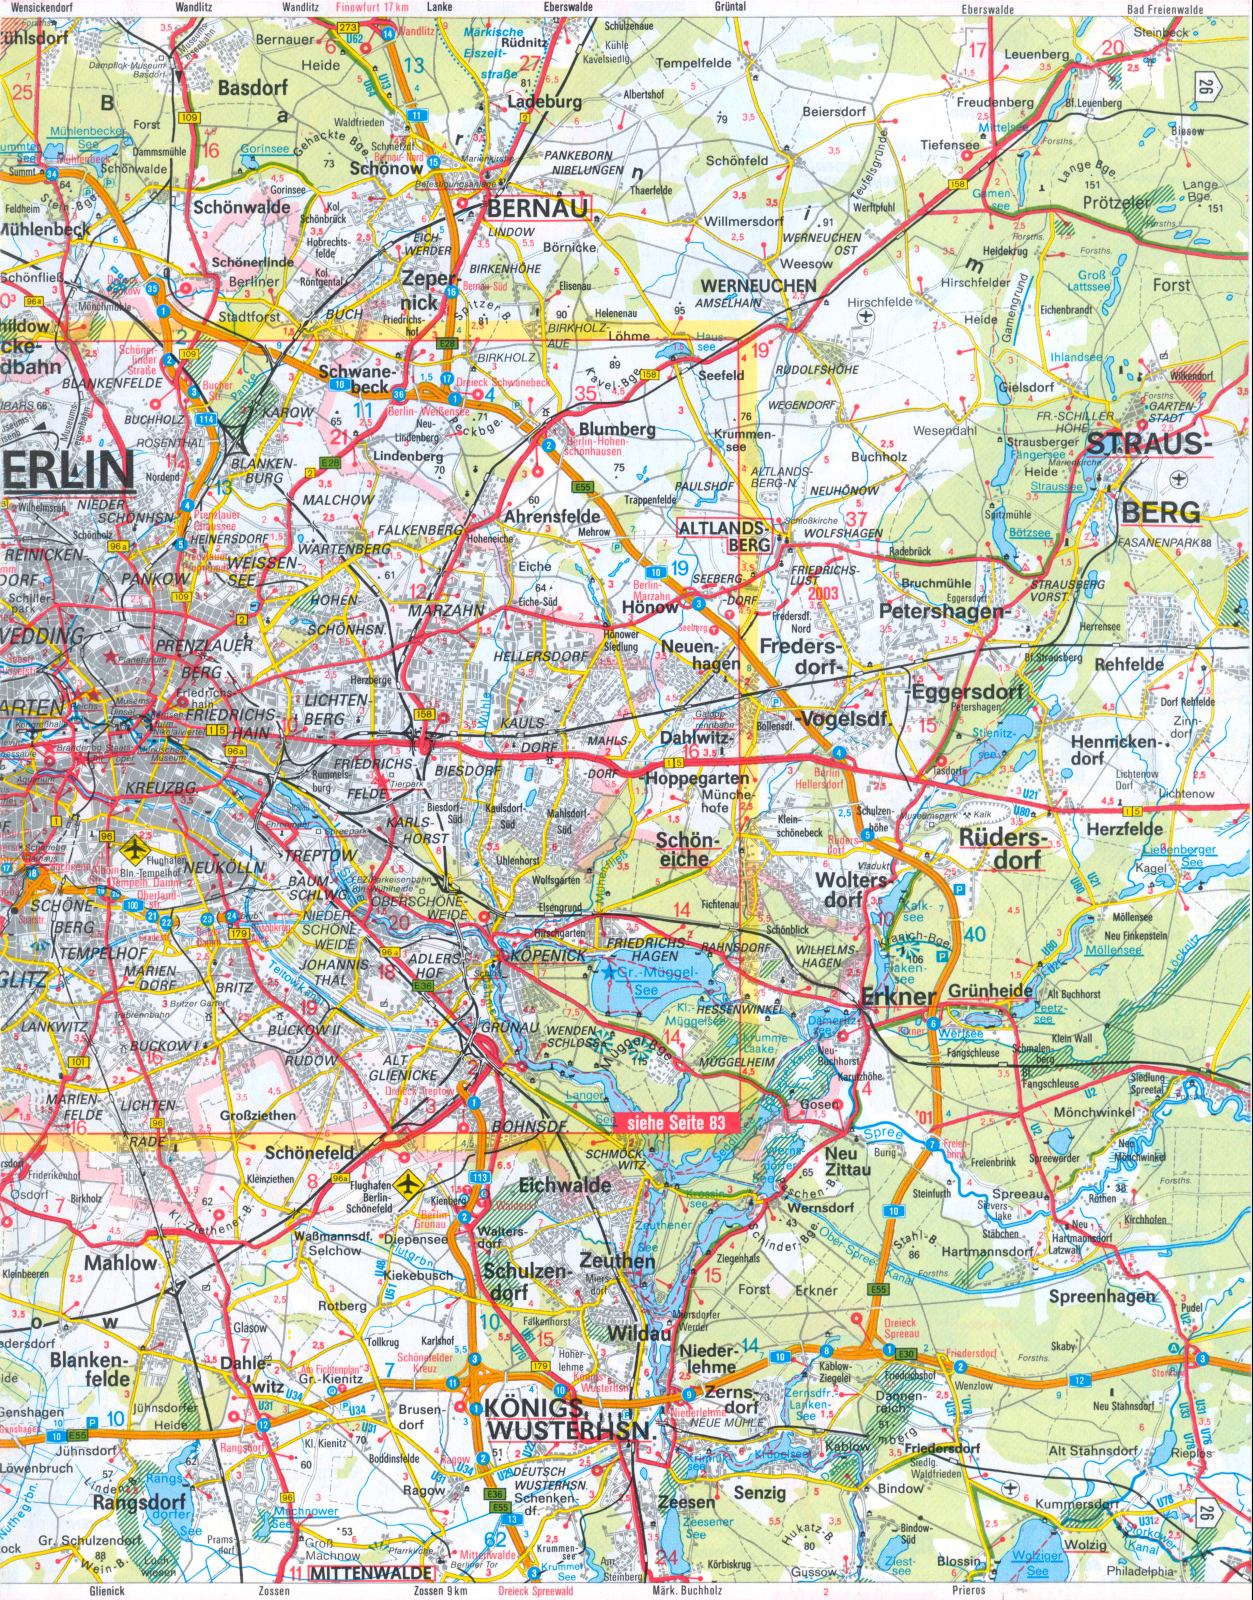 Карта окрестностей Берлина. Большая подробная автомобильная карта окрестностей Берлина, B0 - 